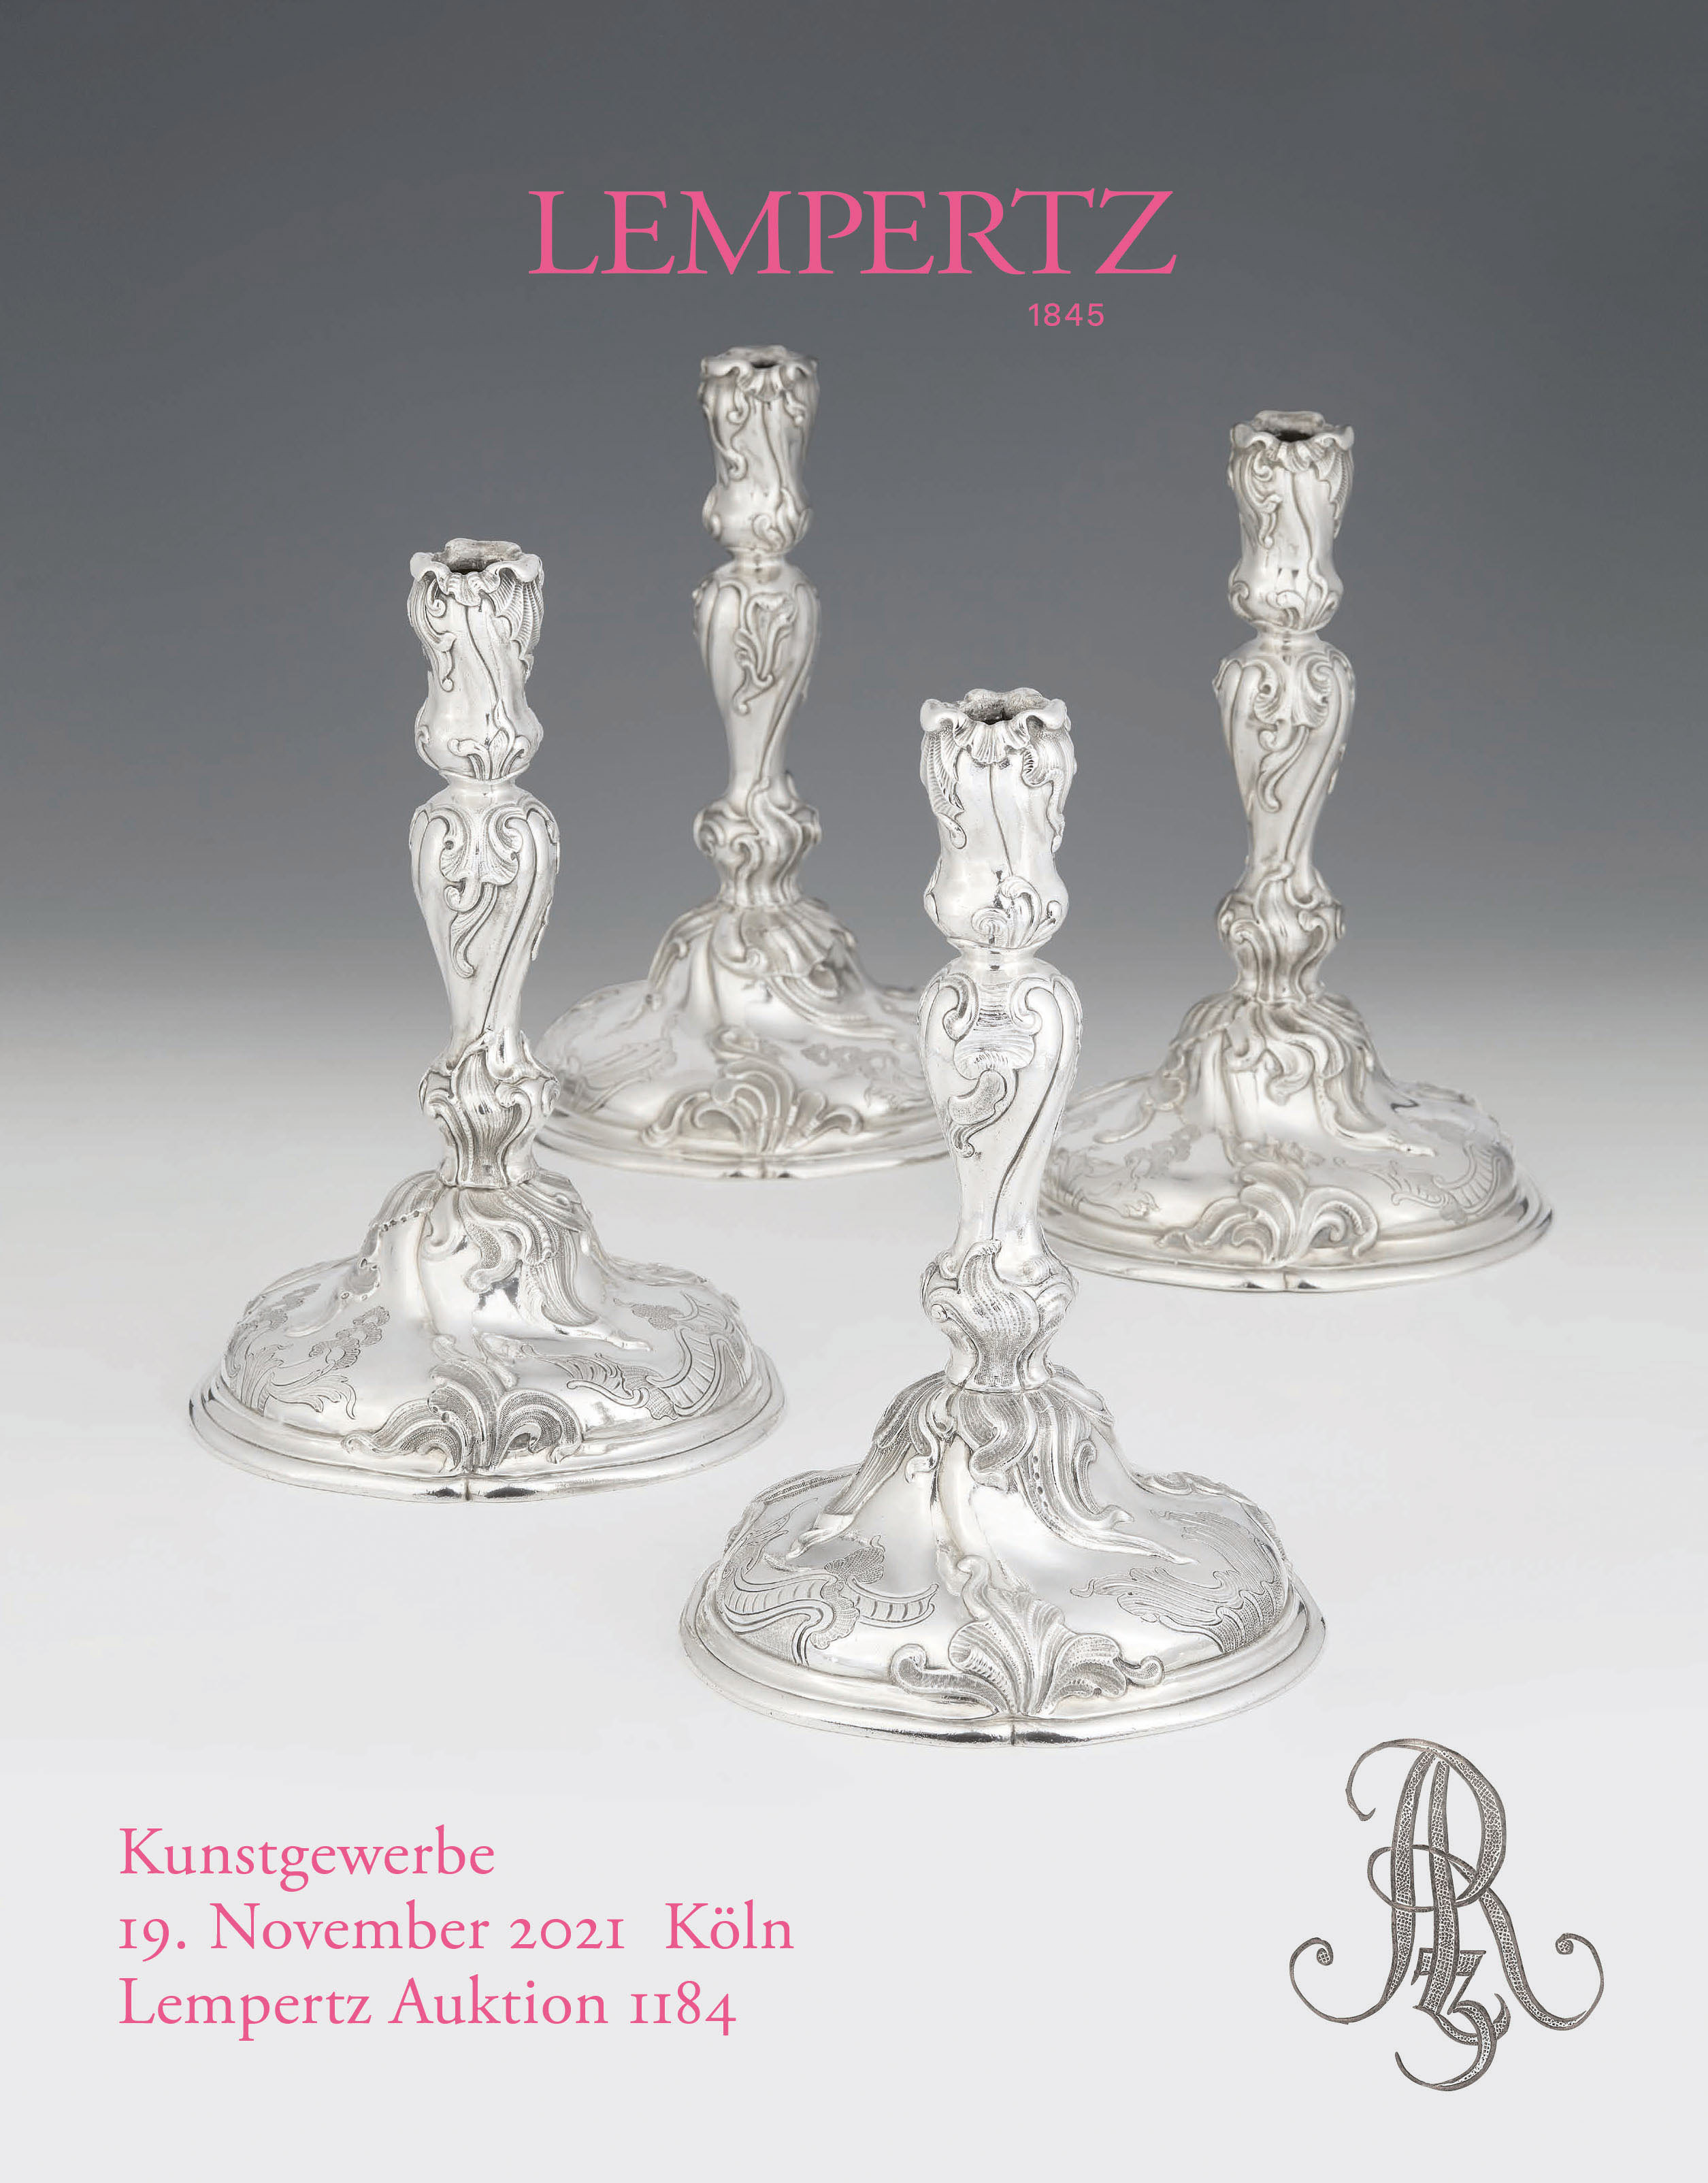 Auktionskatalog - Kunstgewerbe - Online Katalog - Auktion 1184 – Ersteigern Sie hochwertige Kunst in der nächsten Lempertz-Auktion!